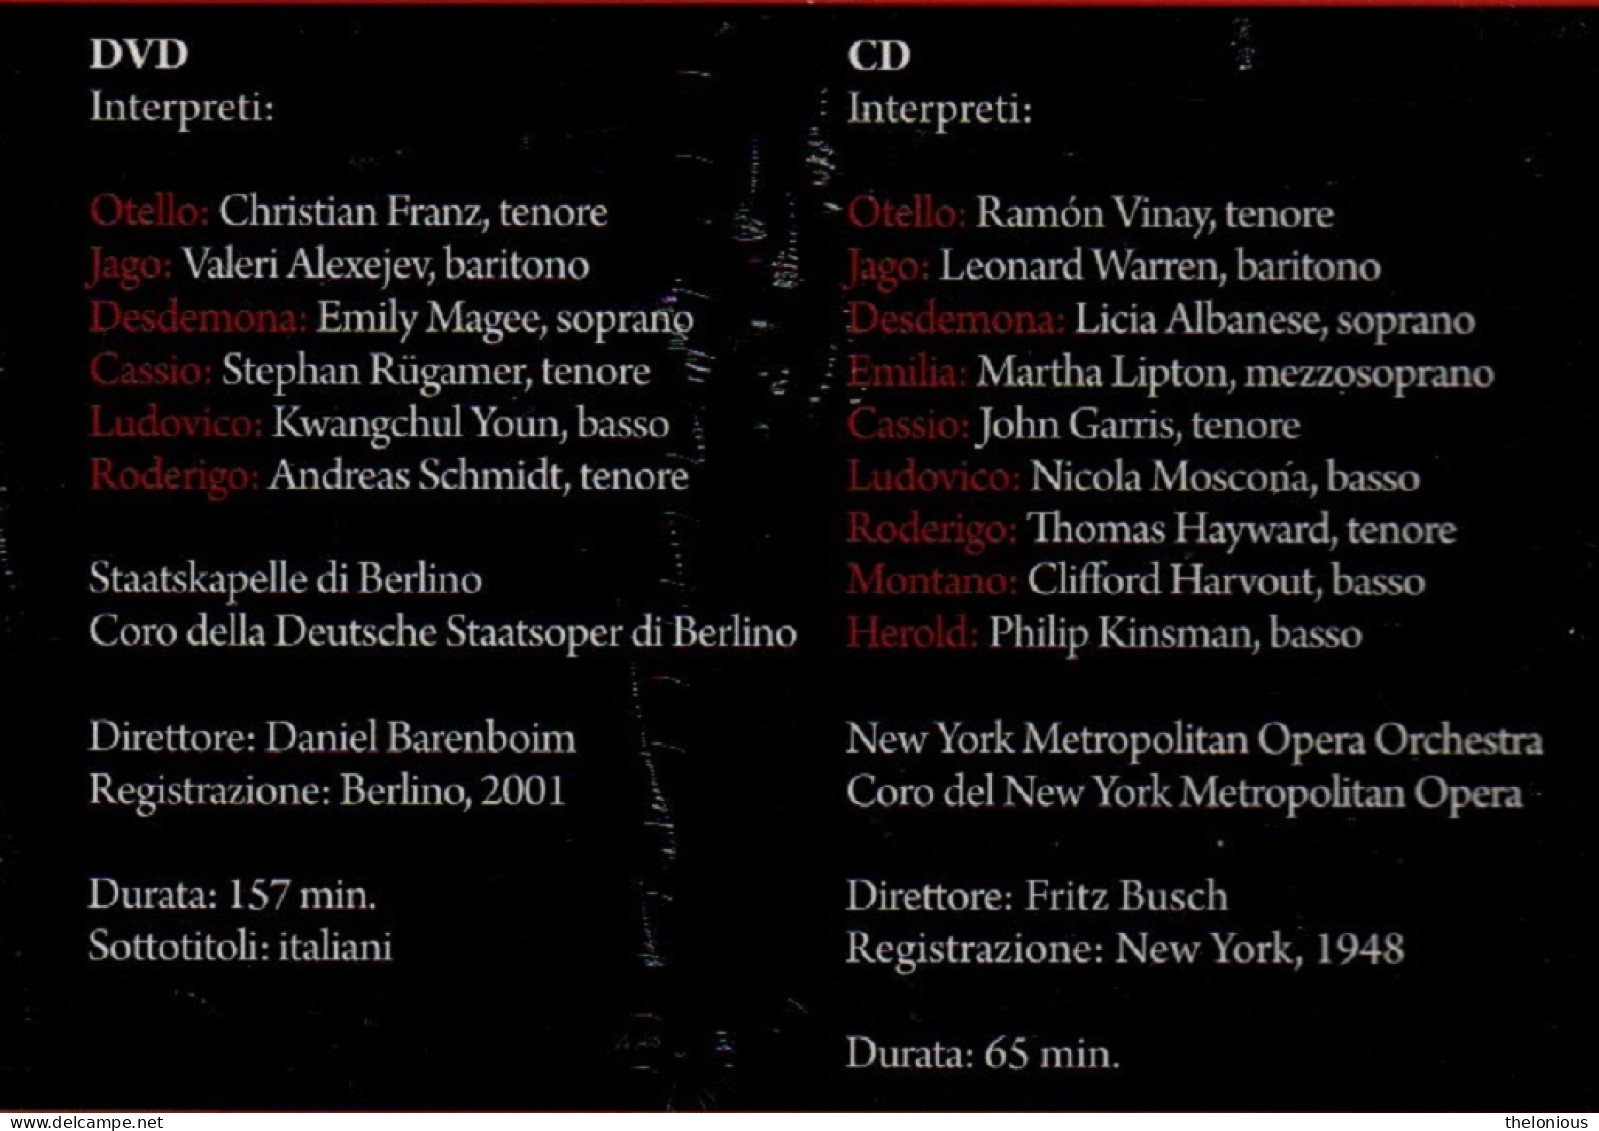 * DVD / CD La Grande Lirica - G. Verdi - Otello - Nuovo Sigillato - Concert Et Musique